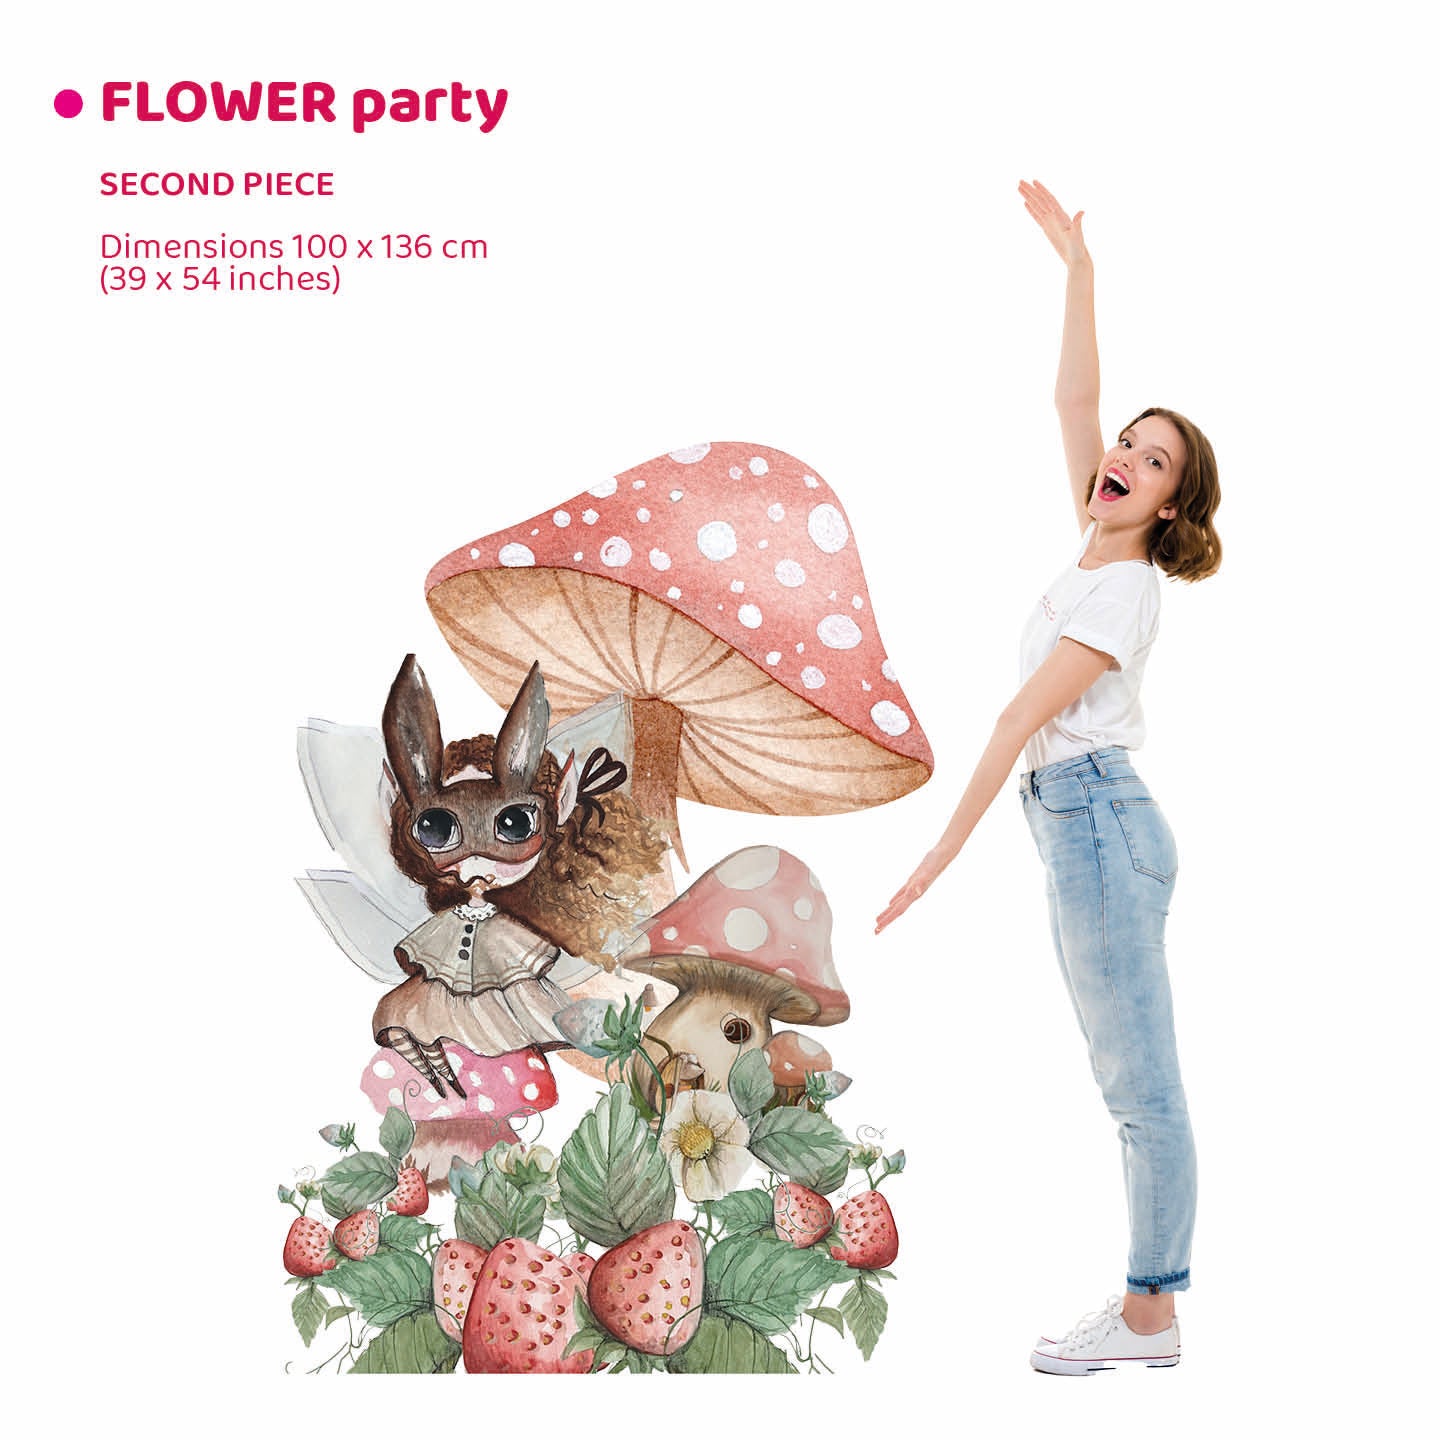 FAIRY PARTY doppio da terra | Decorazione festa di compleanno | Party planner - Peekaboo